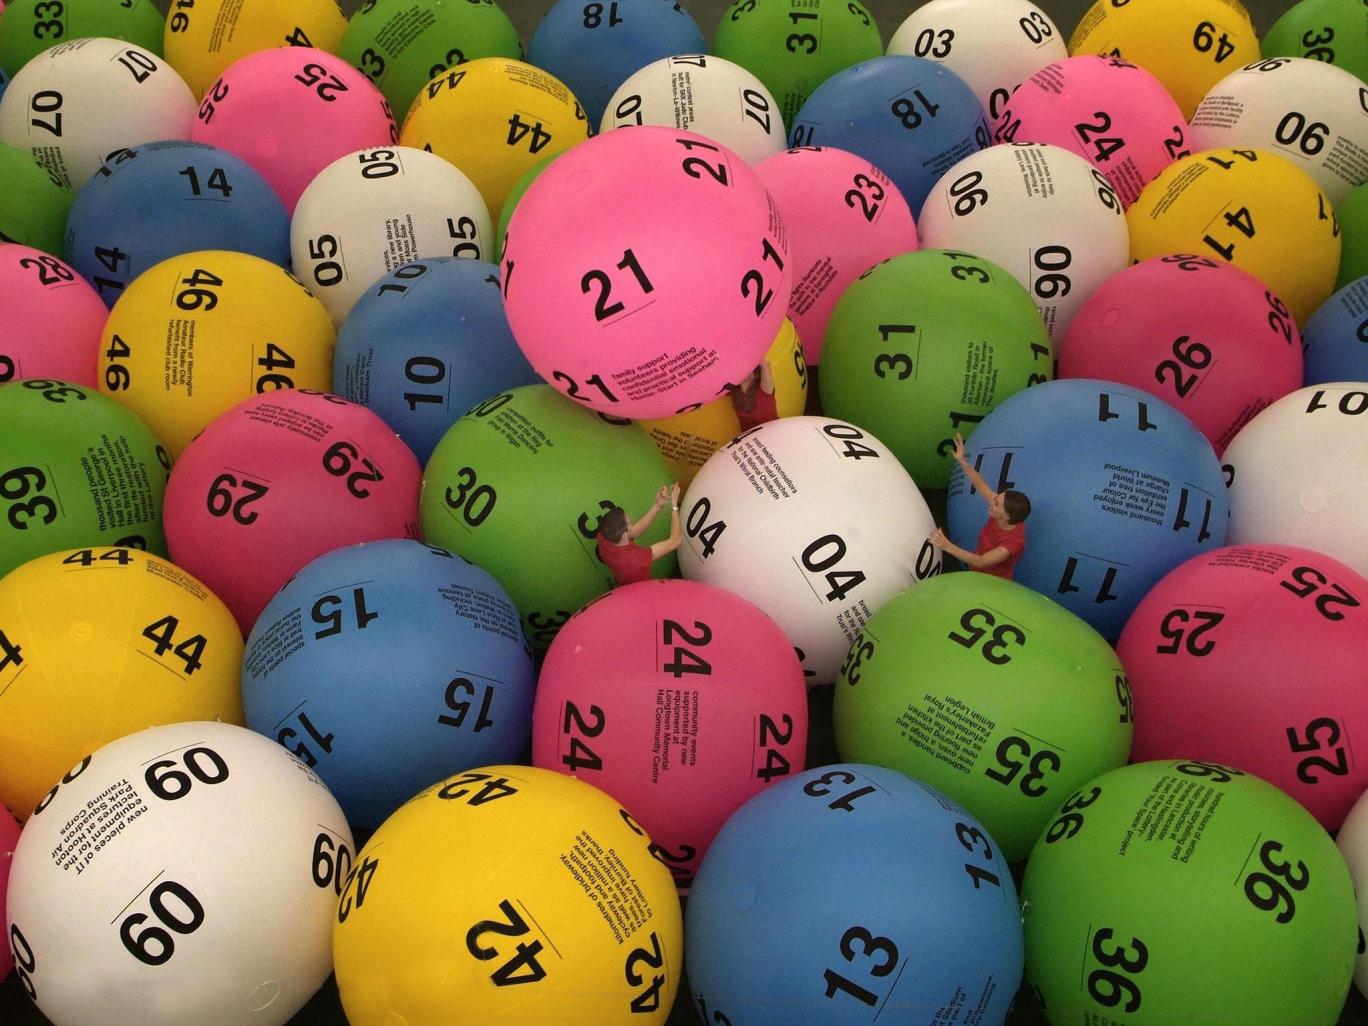 Hiába találták el az összes számot a lottón, mégsem lett övék a nyeremény